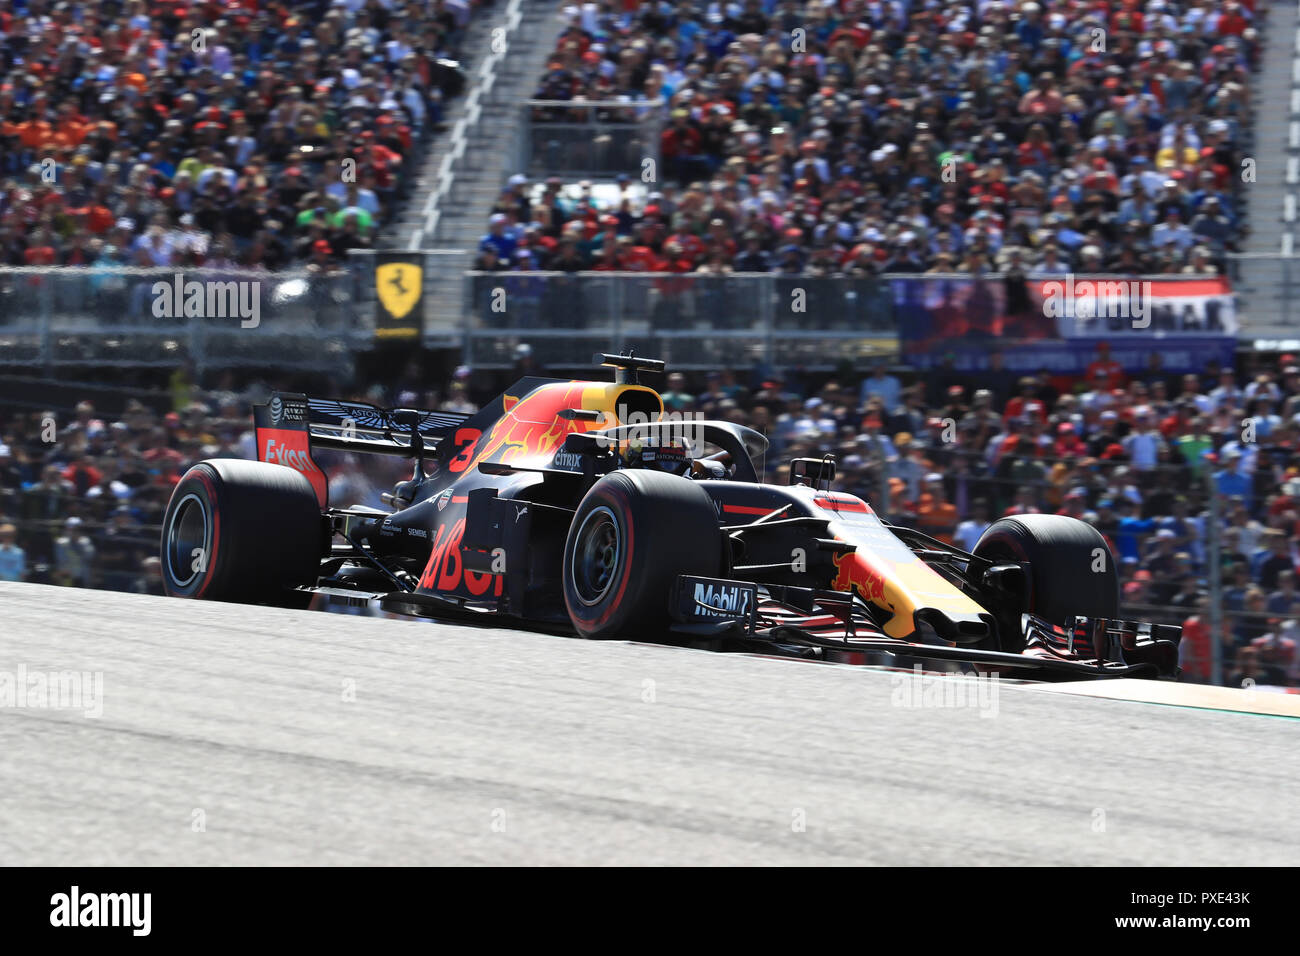 Il 21 ottobre 2018, il circuito delle Americhe, Austin, Stati Uniti d'America; la Formula Uno al Gran Premio degli Stati Uniti, il giorno della gara; Aston Martin Red Bull Racing TAG Heuer, Daniel Ricciardo Foto Stock